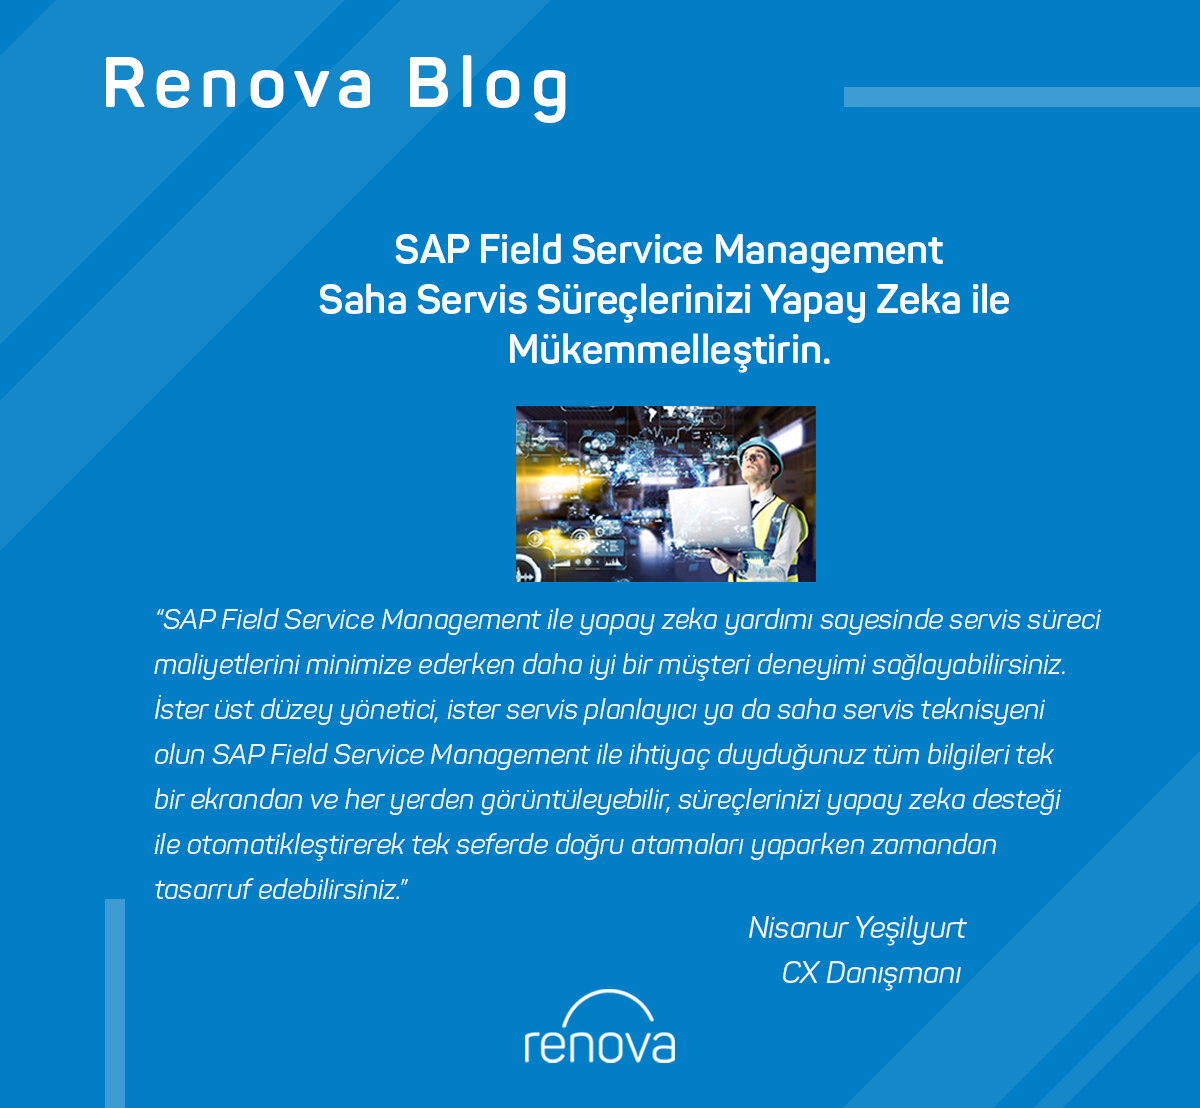 SAP Field Service Management: Saha Servis Süreçlerinizi Yapay Zeka ile Mükemmelleştirin